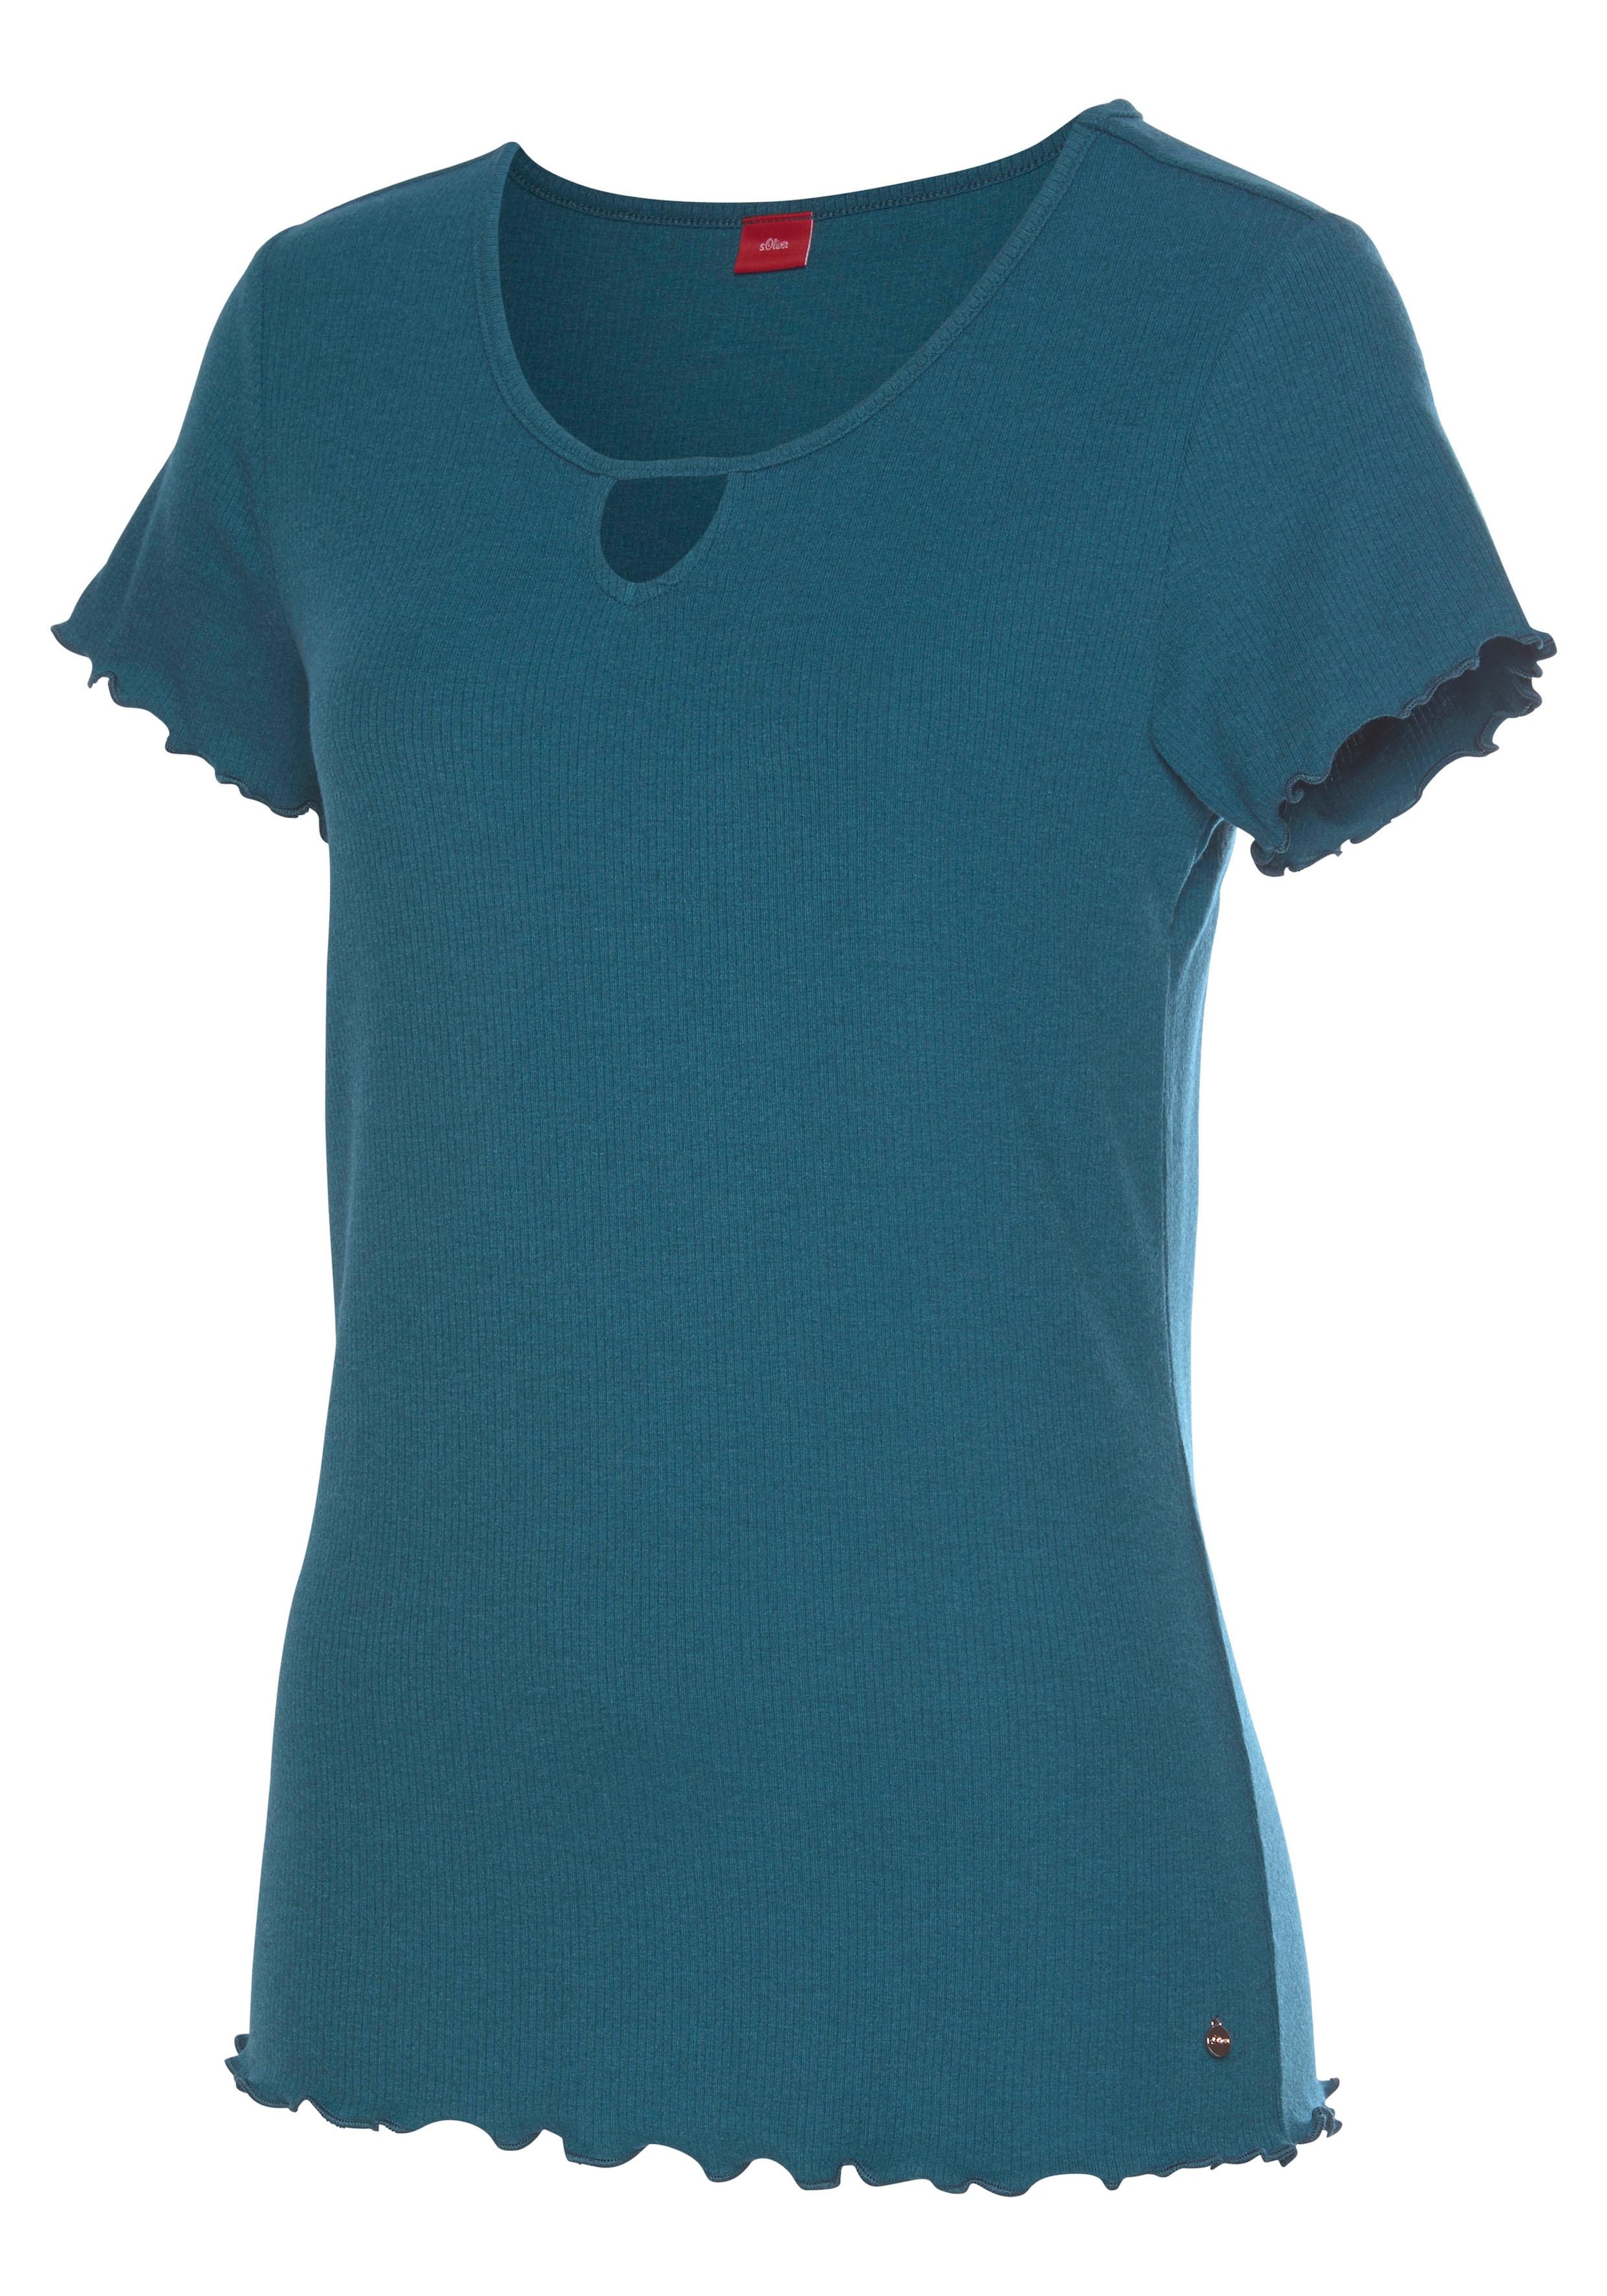 Stoff LASCANA & | online kaufen » aus s.Oliver T-Shirt, Bademode, Kräuselsäumen Unterwäsche Lingerie geripptem mit